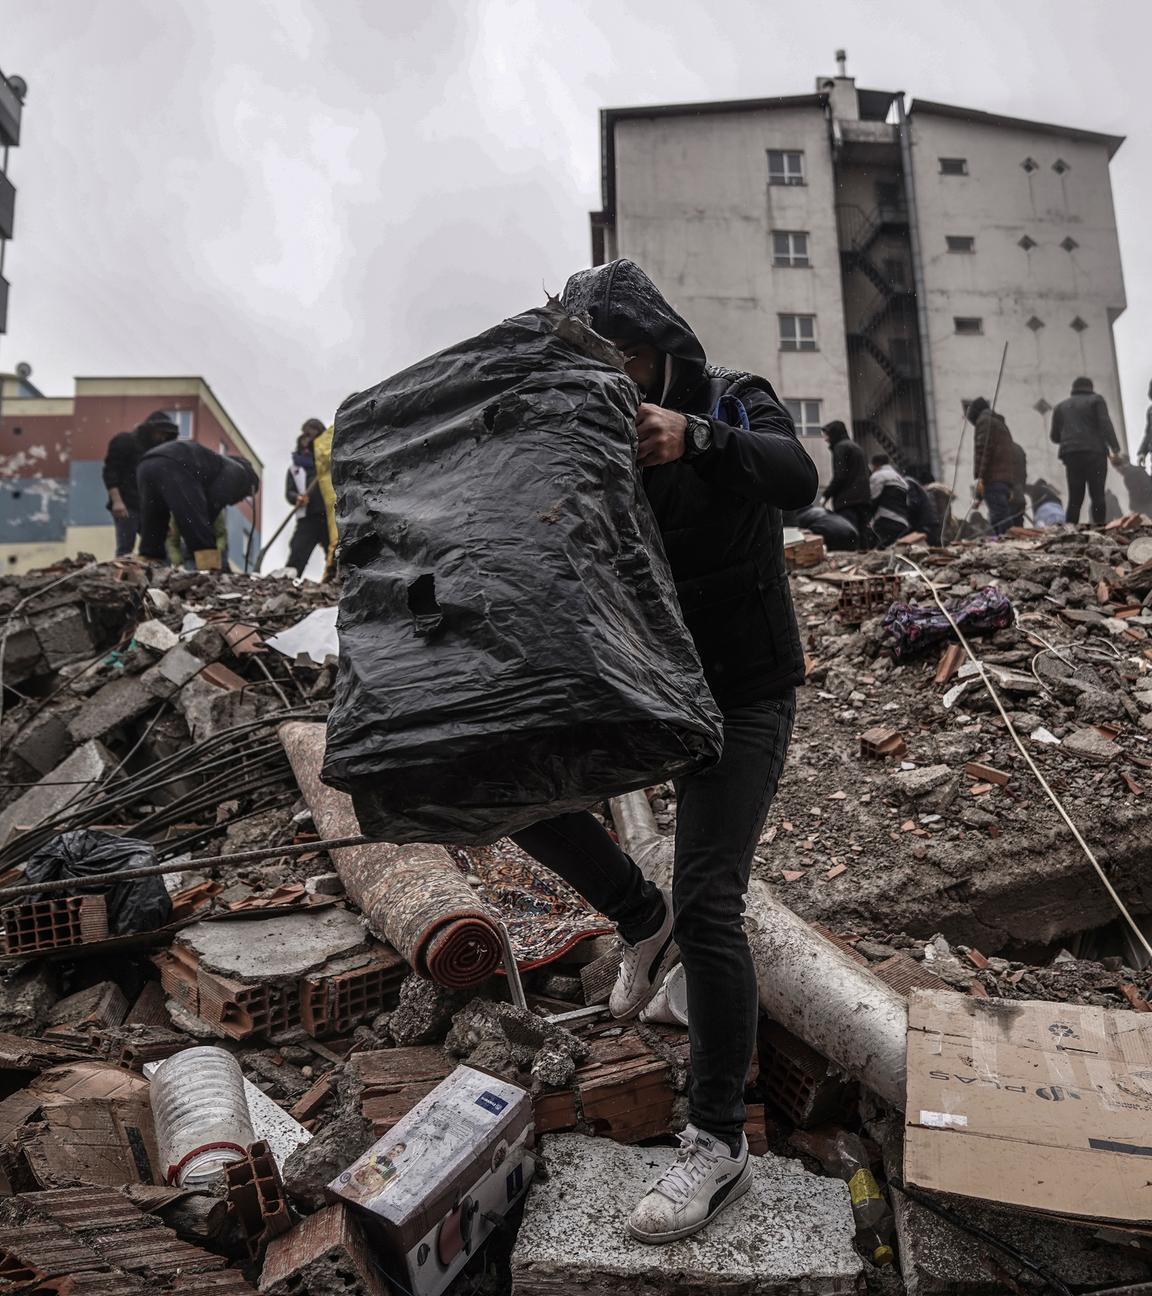 Türkei, Gaziantep: Menschen und Rettungskräfte suchen nach Menschen in den Trümmern eines zerstörten Gebäudes.